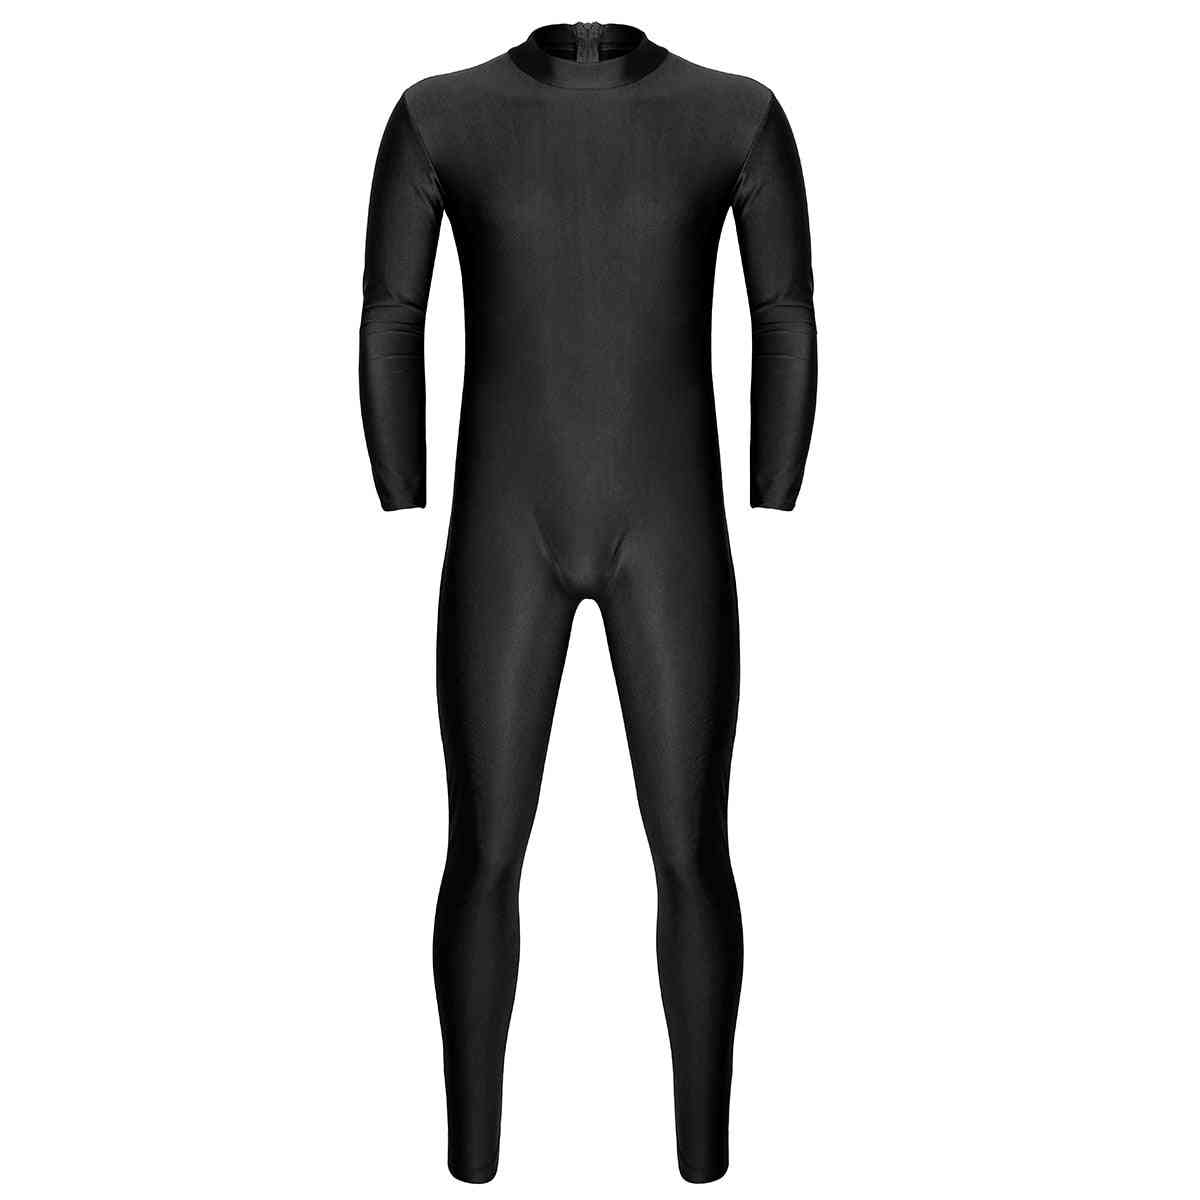 Full Body Skin-tight Jumpsuit, Zentai Suit Bodysuit